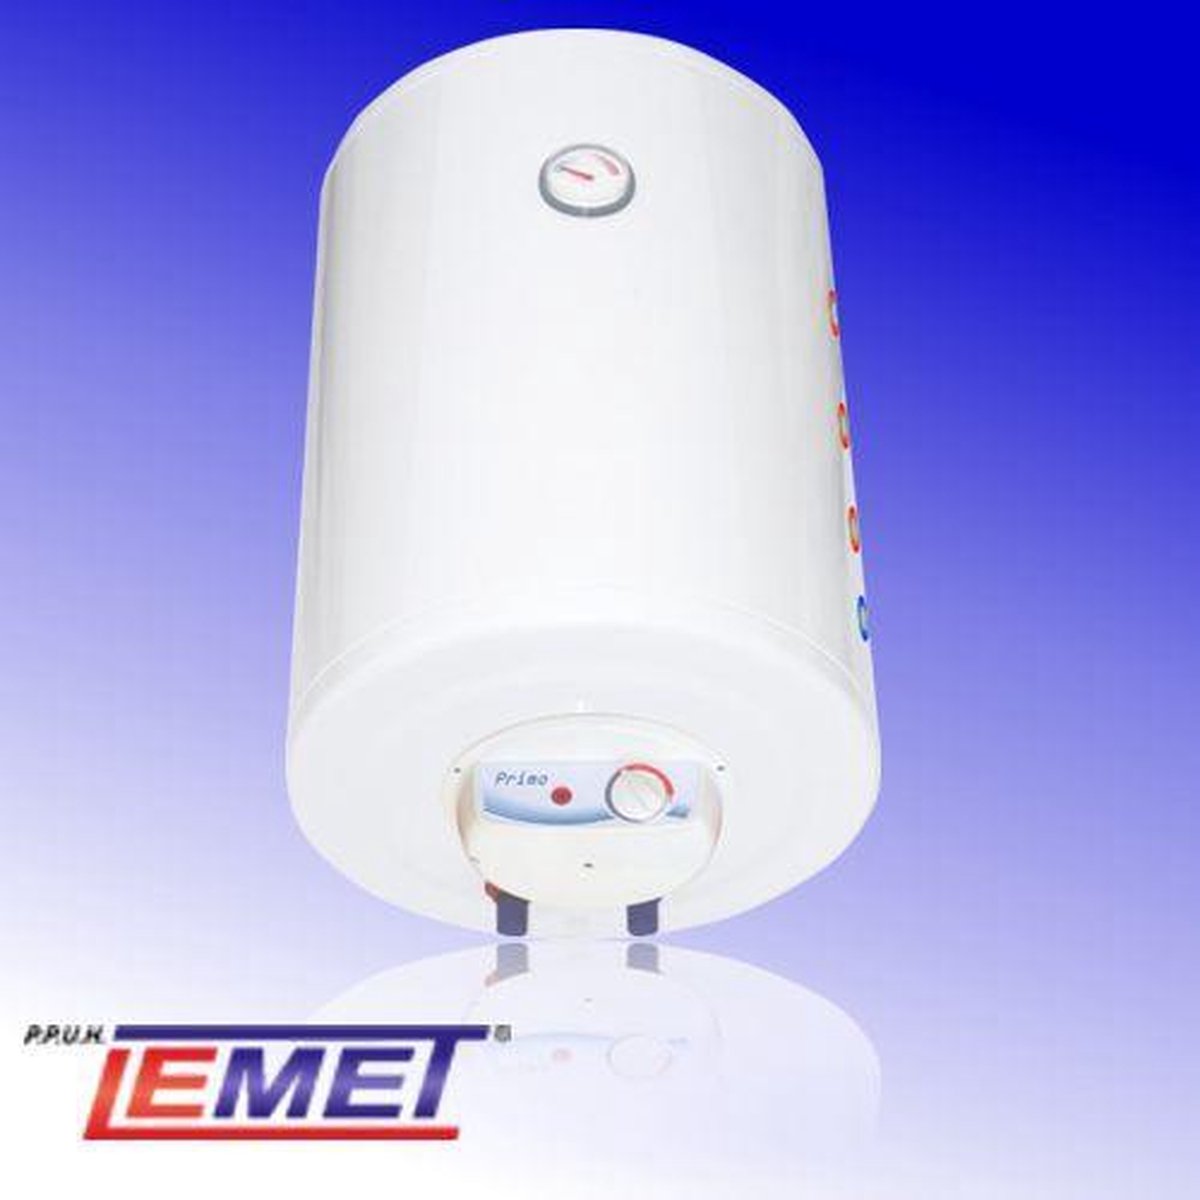 Elektrische Boiler 80 liter 1 spiraal 1,5kW, Lemet | bol.com